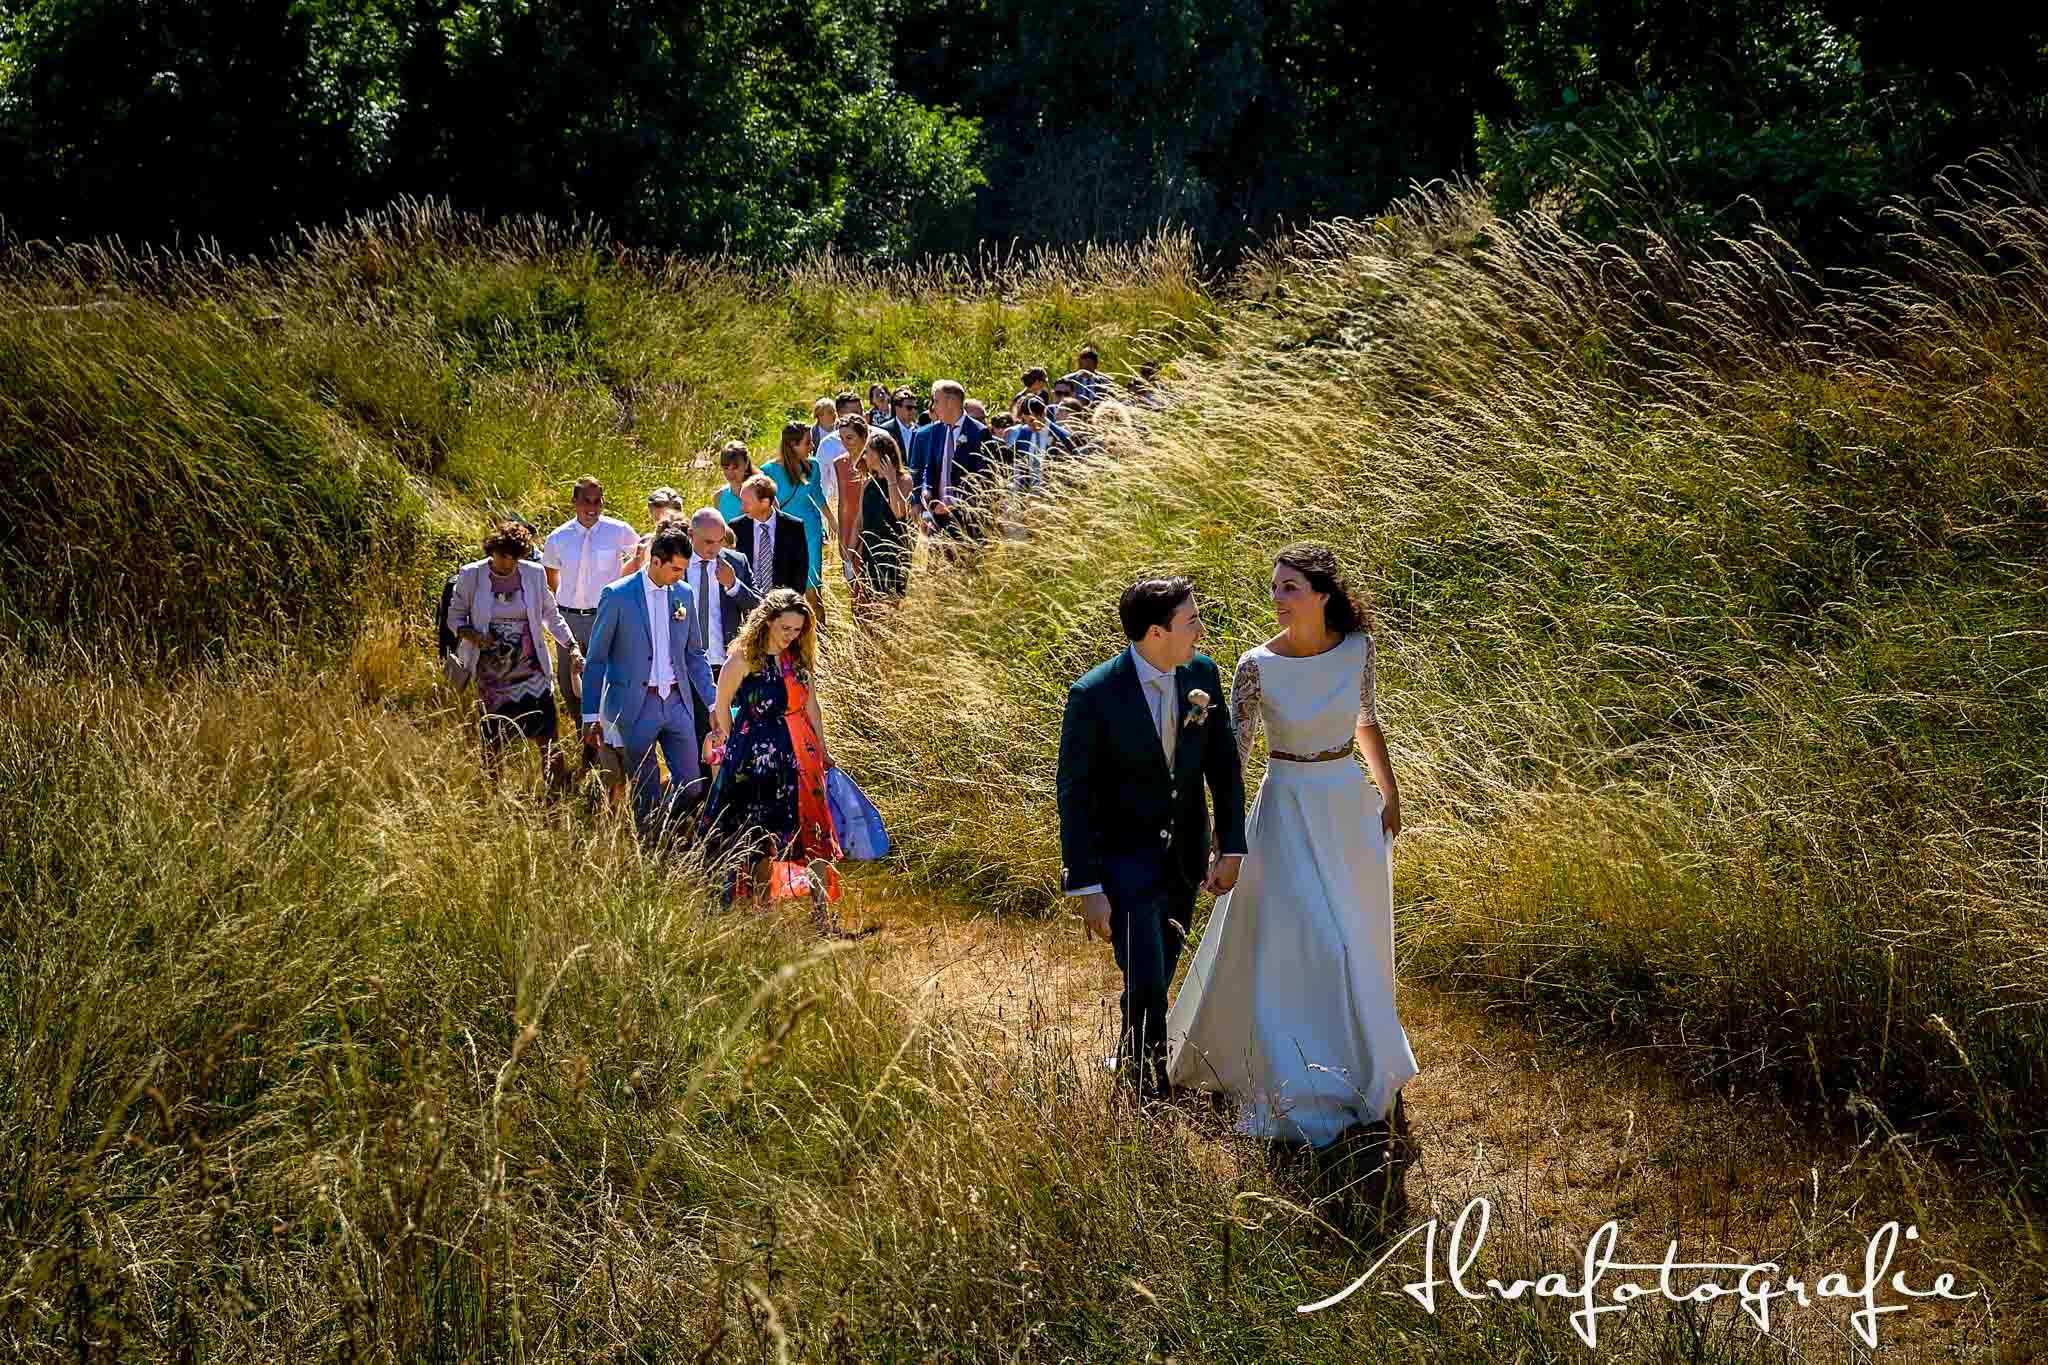 Bruiloft Maren en Tim Alvafotografie bruidspaar loopt heuvel op met gasten Paviljoen Puur